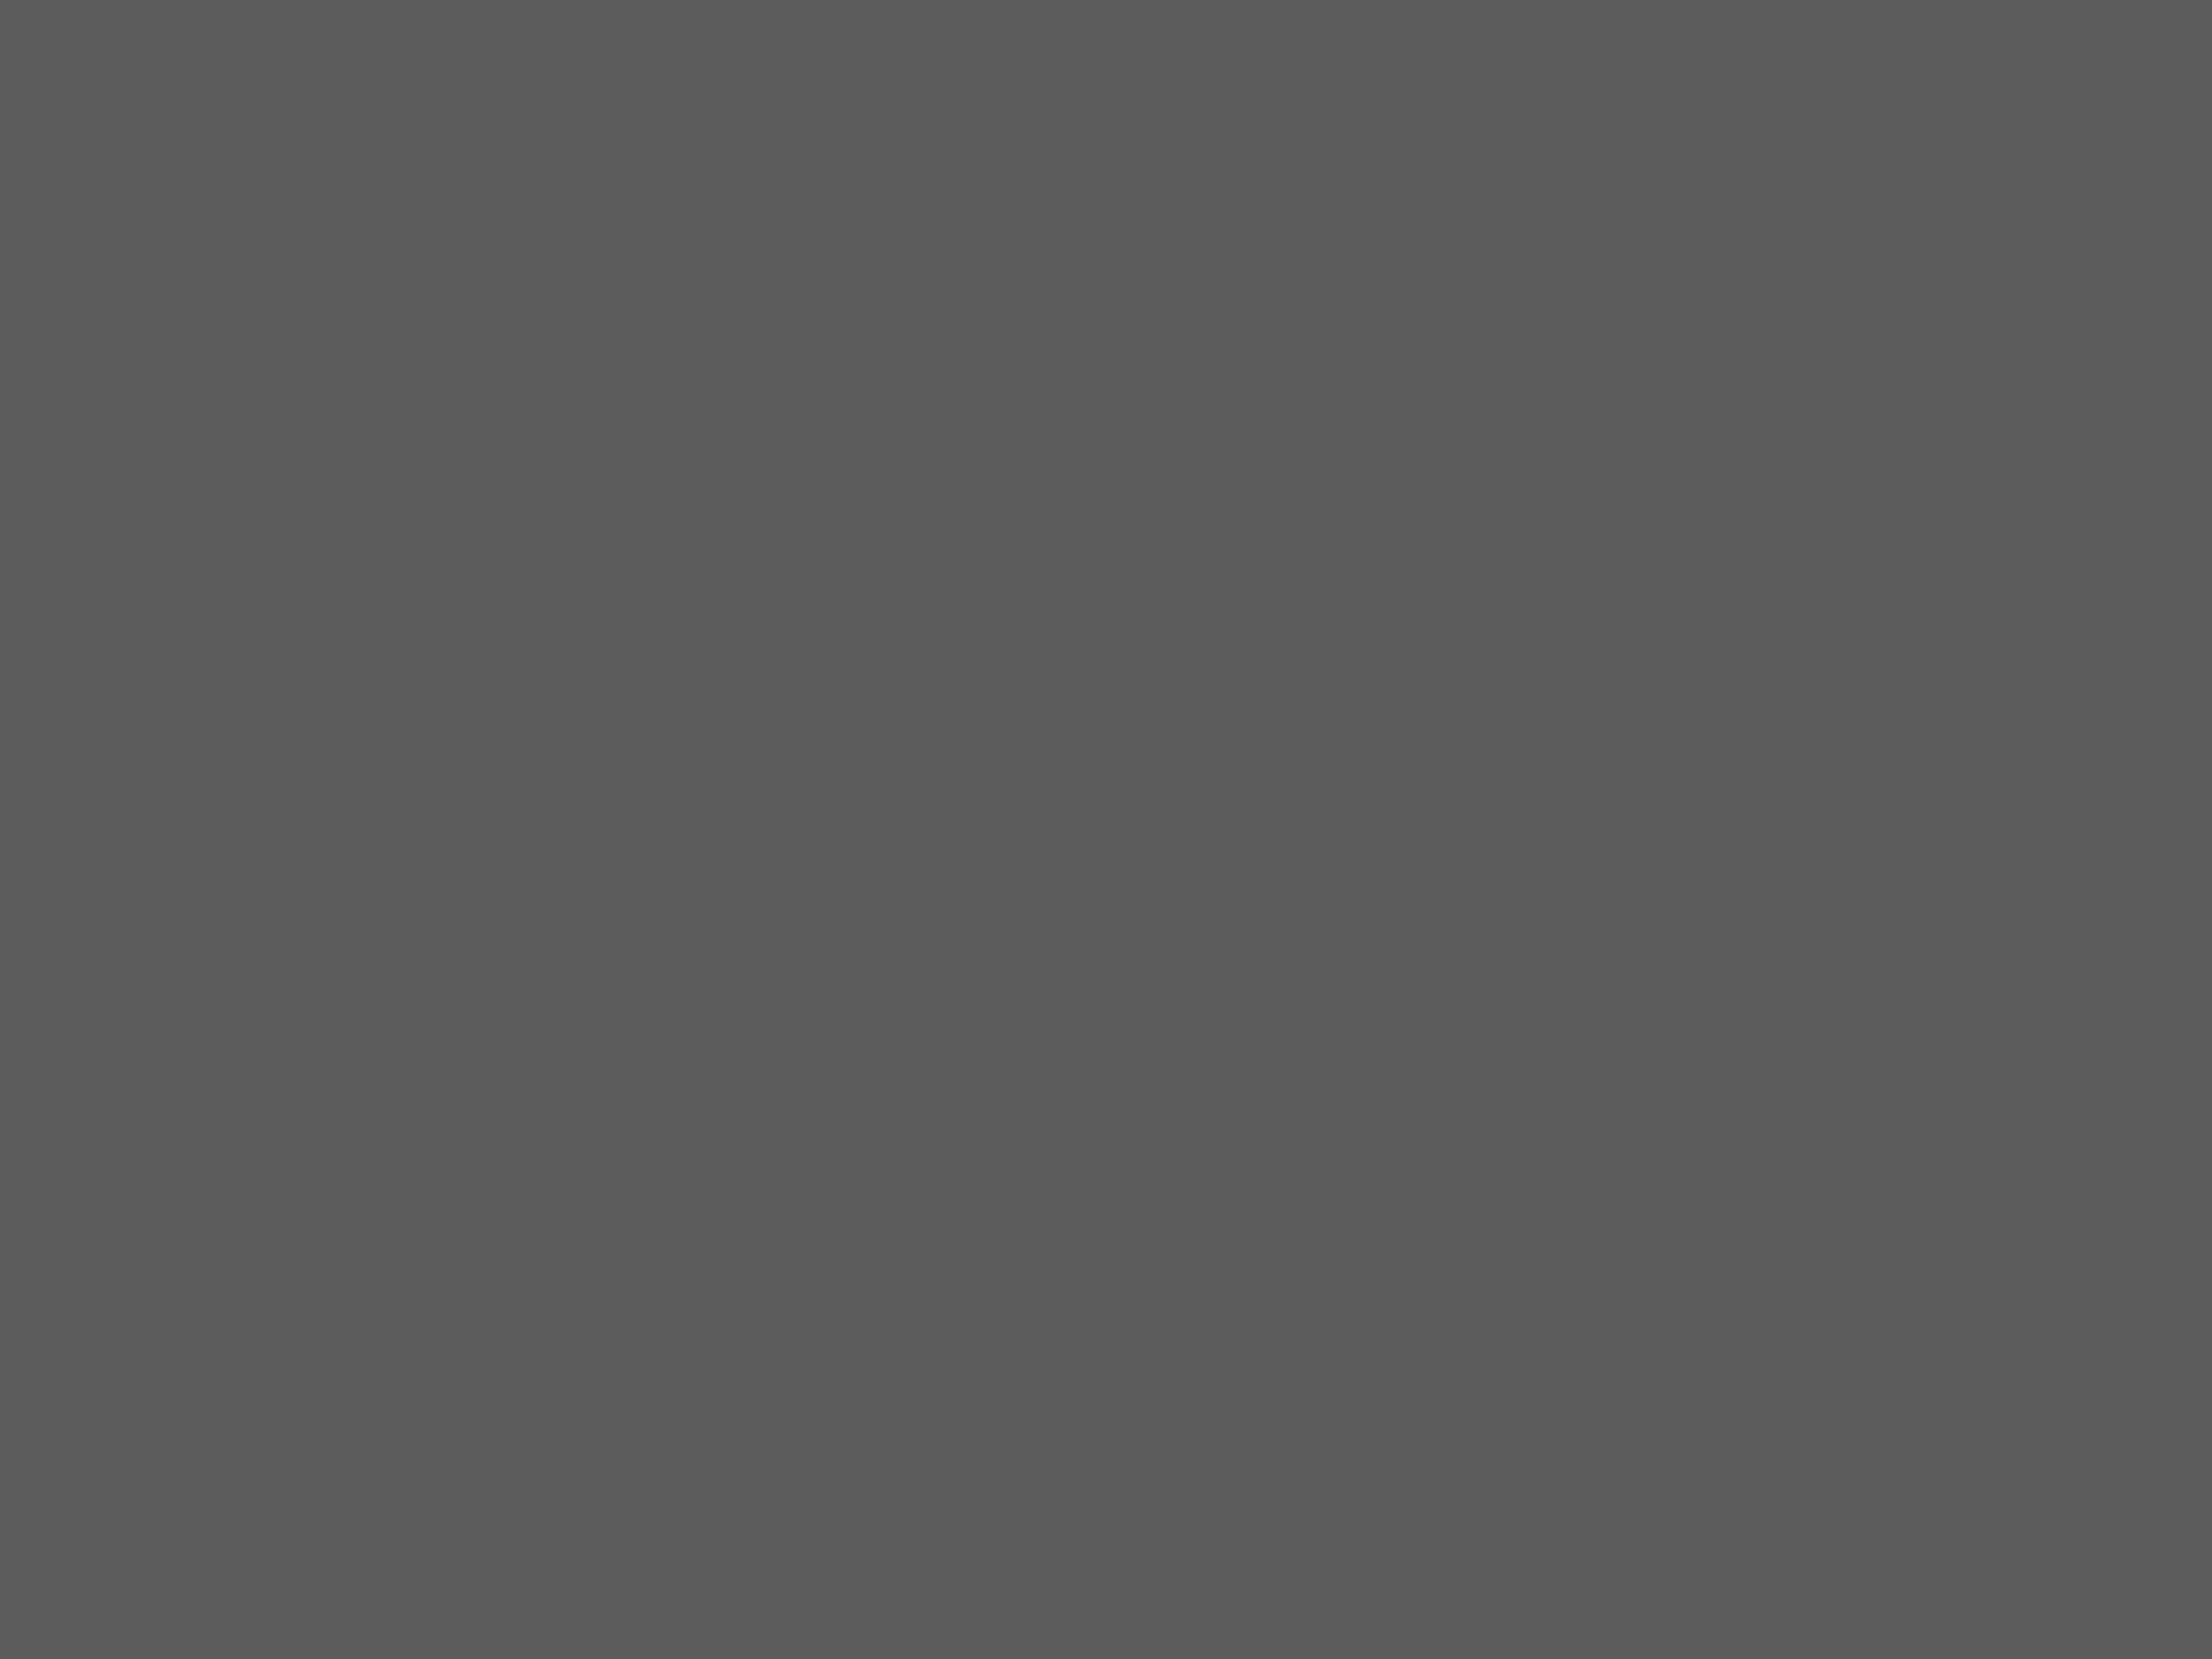 Расул Гамзатов с отцом — поэтом и переводчиком Гамзатом Цадасой. 1950 год. Фотография: Национальный музей Республики Дагестан им. А. Тахо-Годи, Махачкала, Республика Дагестан